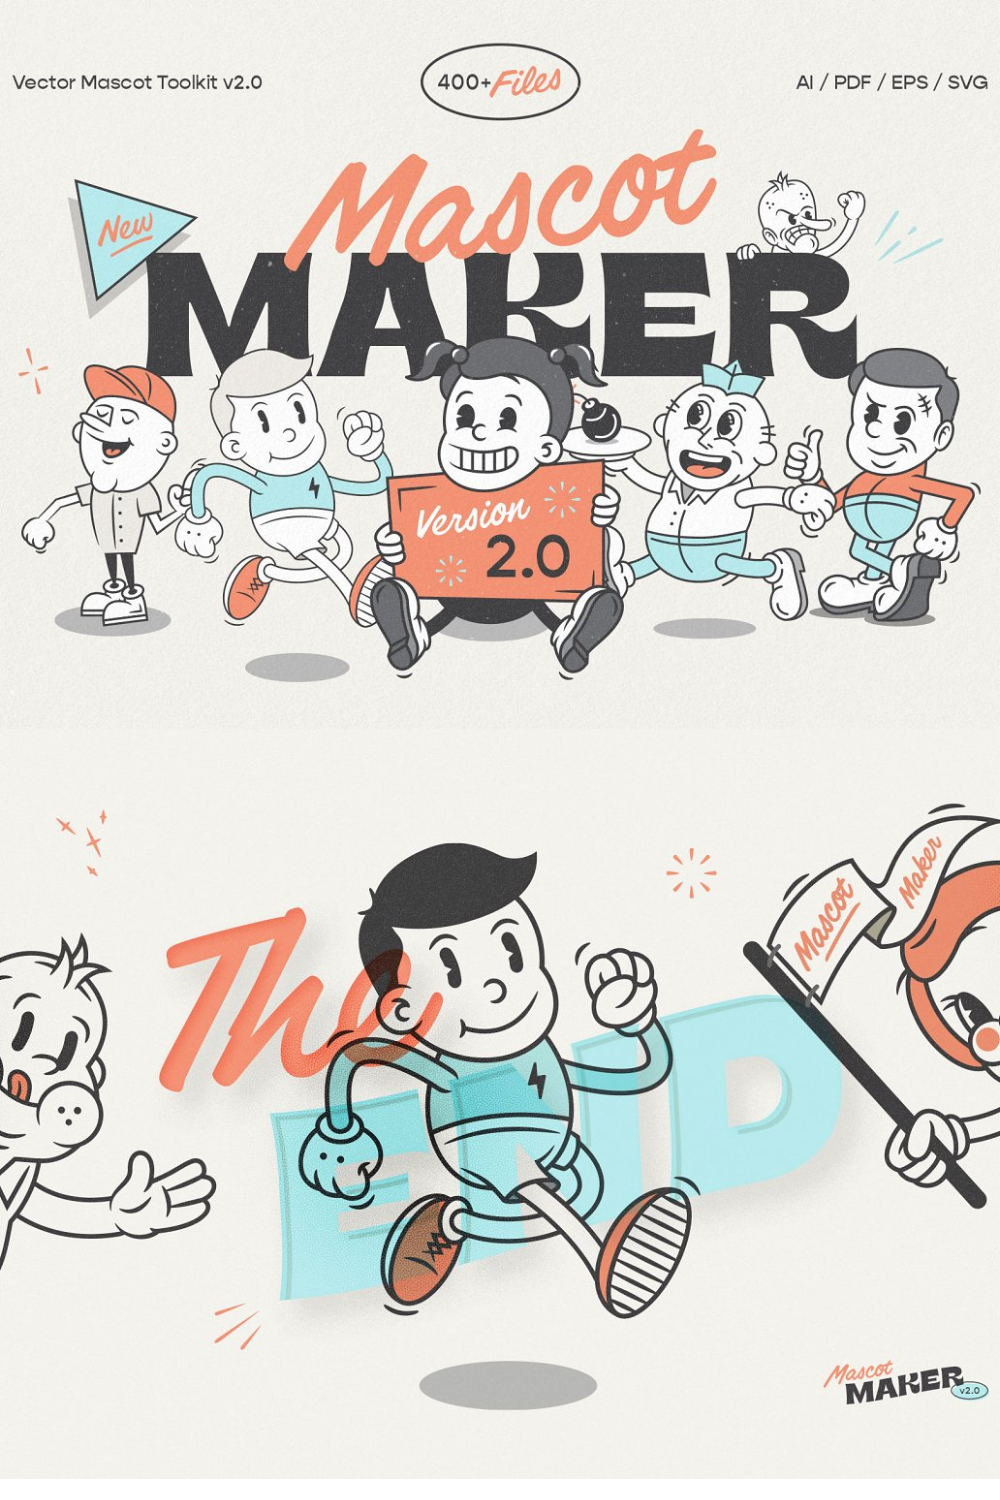 Mascot Maker V2.0: Vector Toolkit - Pinterest.